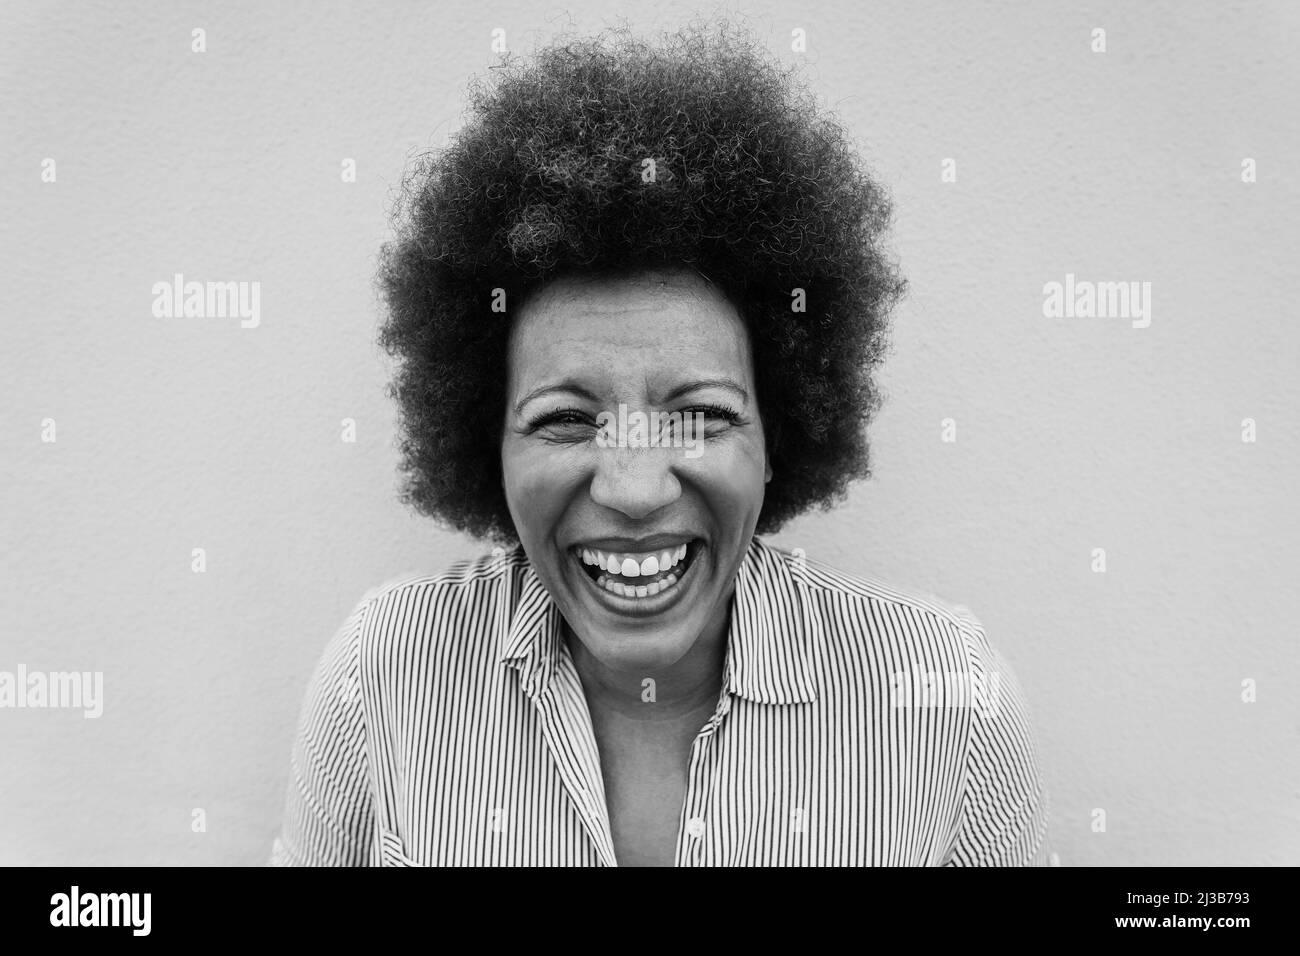 Porträt einer glücklichen älteren afrikanischen Frau beim Blick auf die Kamera - Fokus auf Gesicht - Schwarz-Weiß-Schnitt Stockfoto